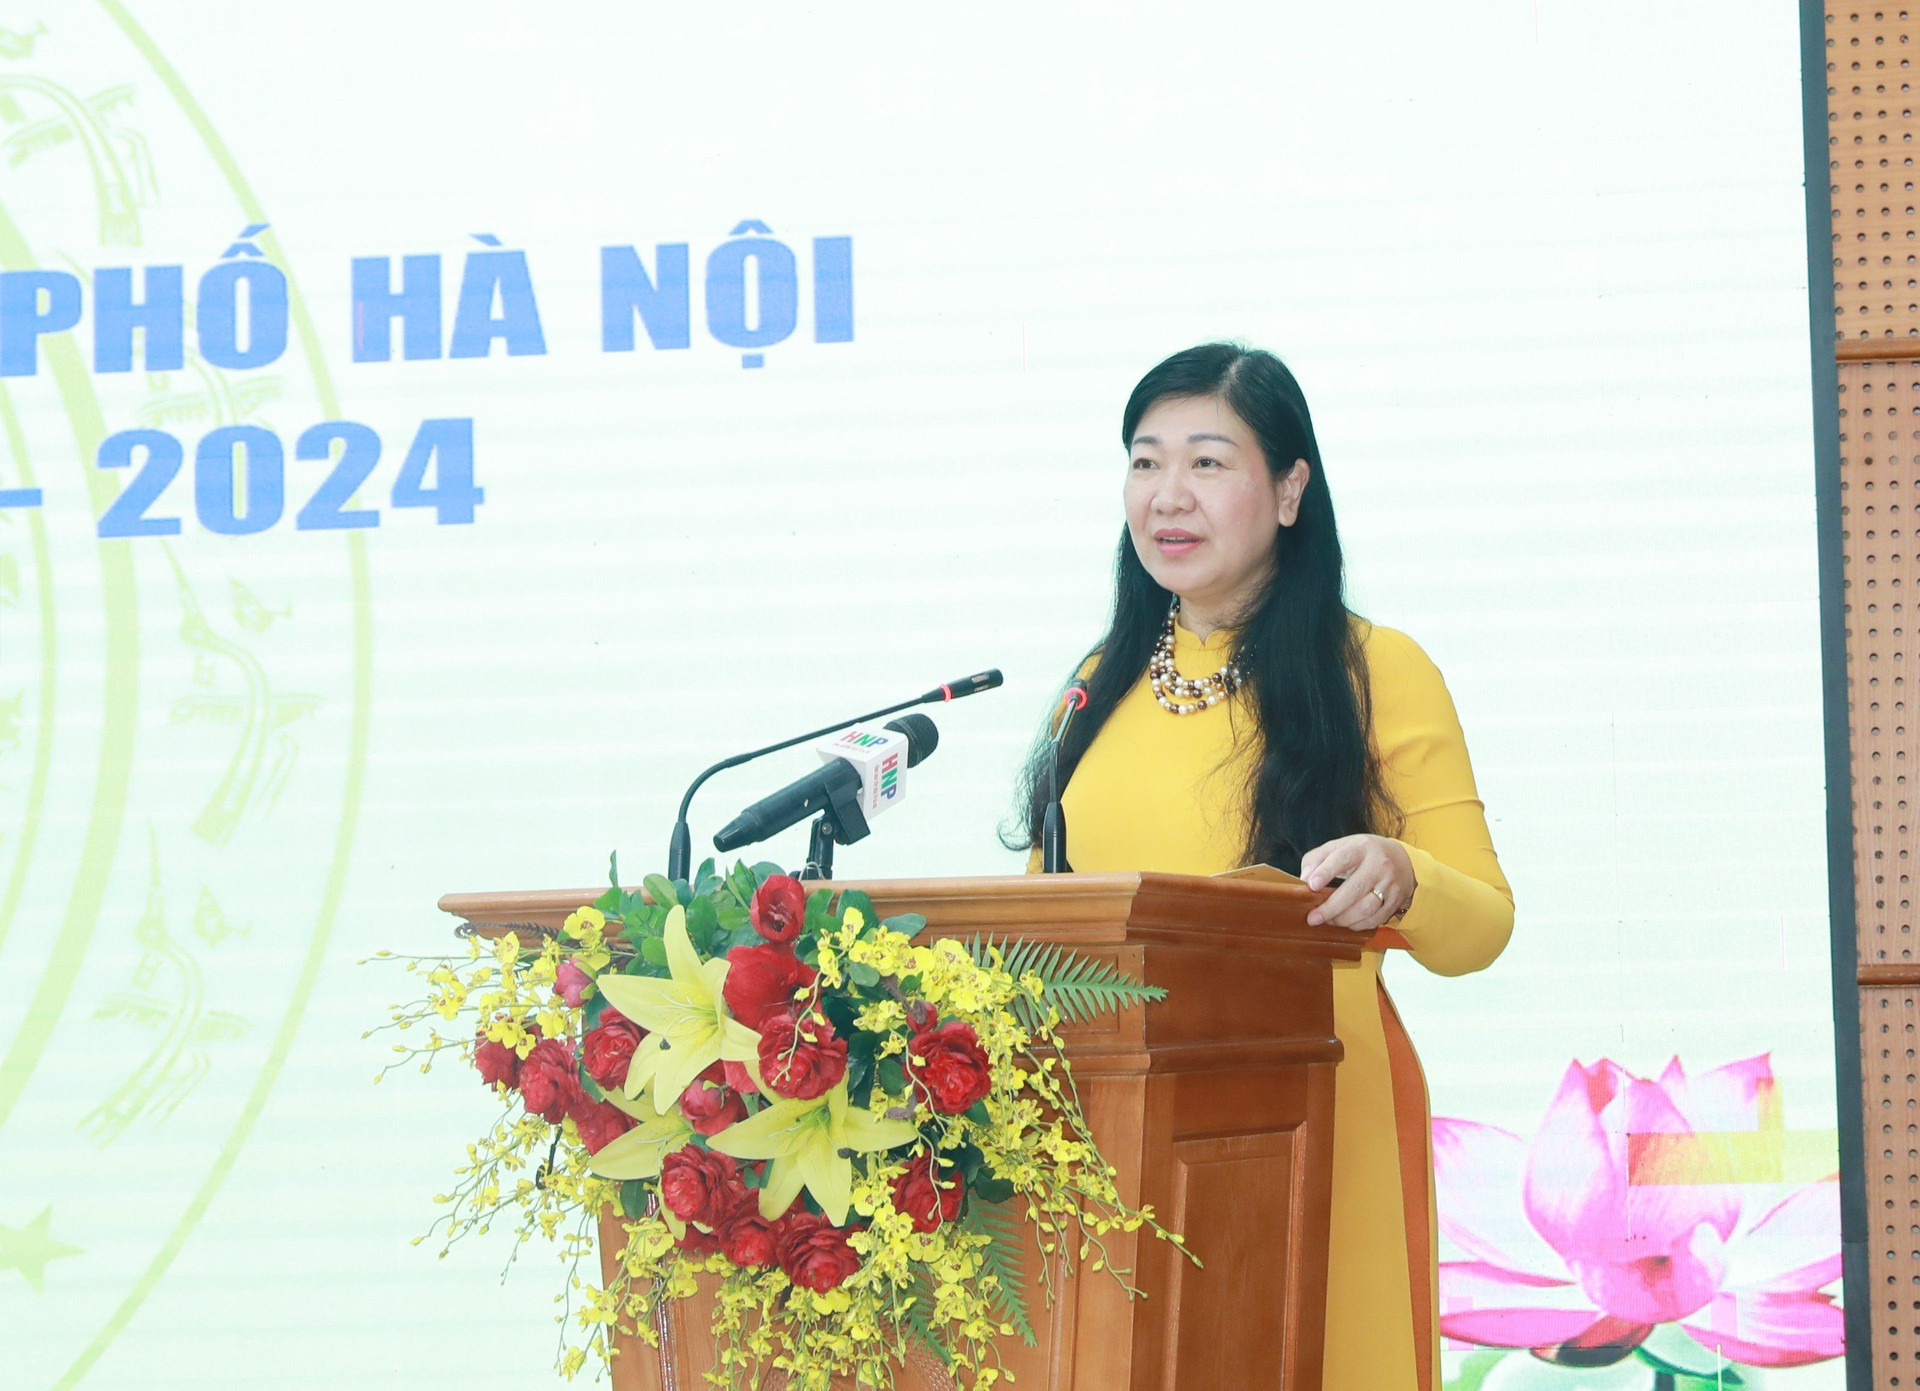 Bà Nguyễn Lan Hương, Chủ tịch Ủy ban MTTQ Việt Nam thành phố Hà Nội phát biểu tại hội nghị.